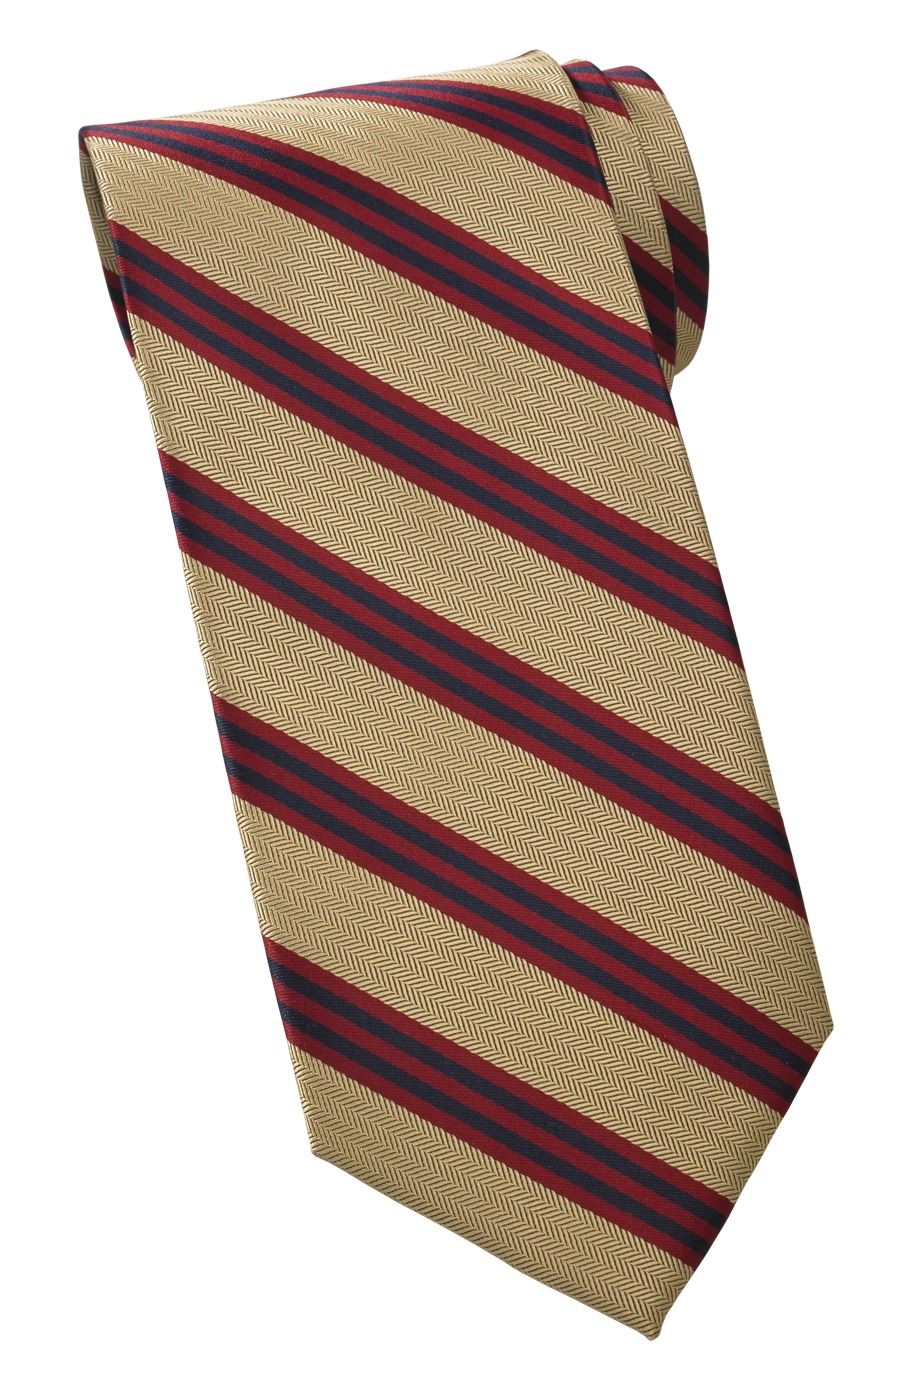 Edwards Garment QS00 - Quint Stripe Tie